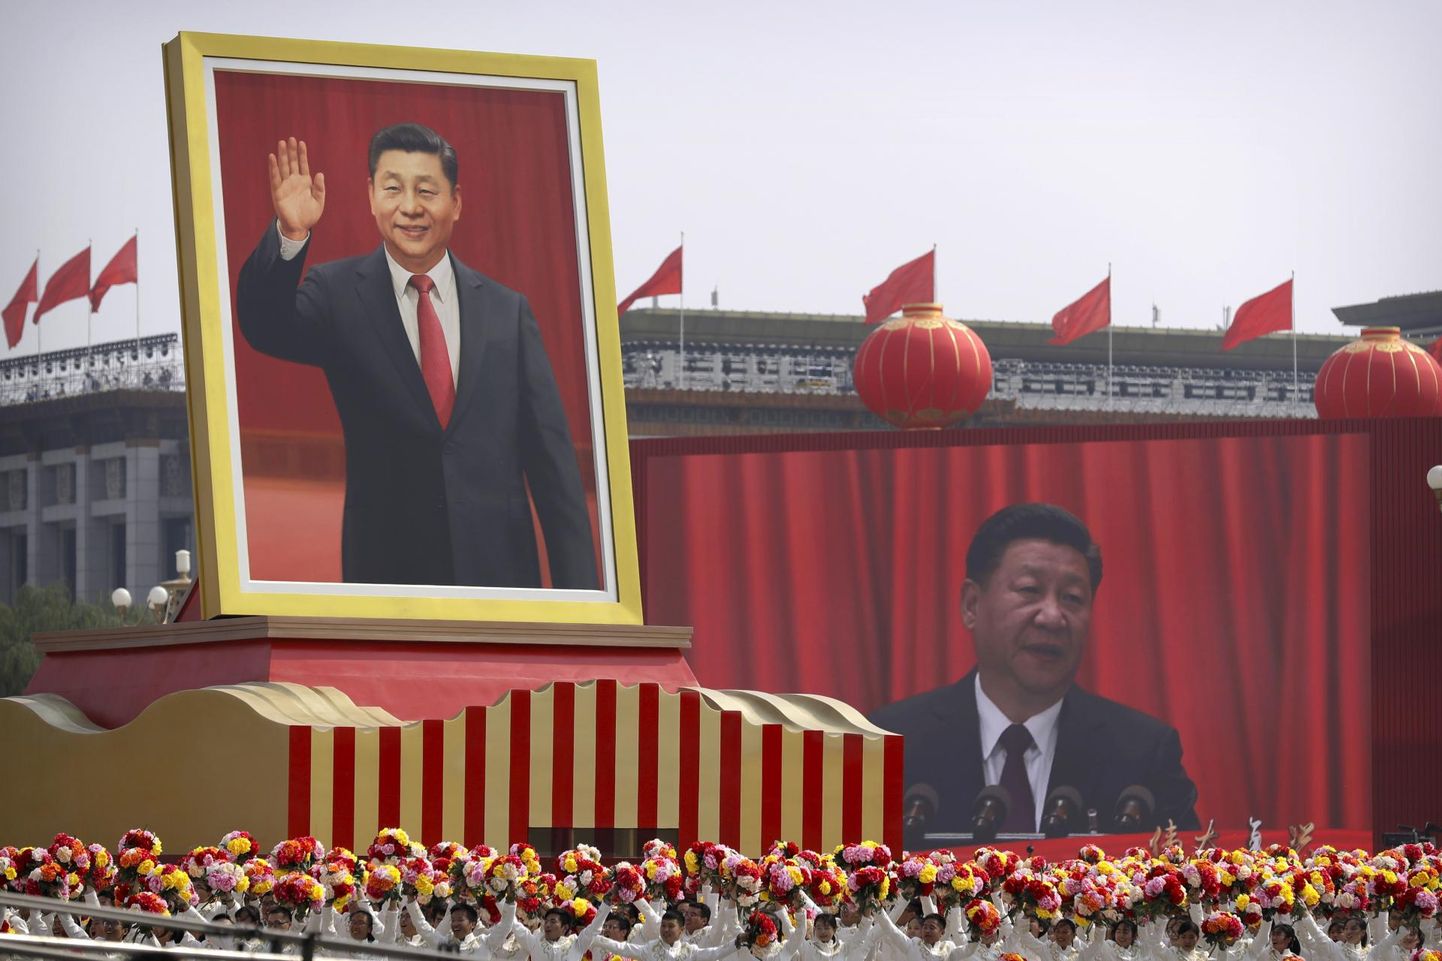 Hiina Rahvavabariigi loomise 70. aastapäeva tähistajad tänavu 1. oktoobril hiiglasliku Xi Jinpingi pildi all.